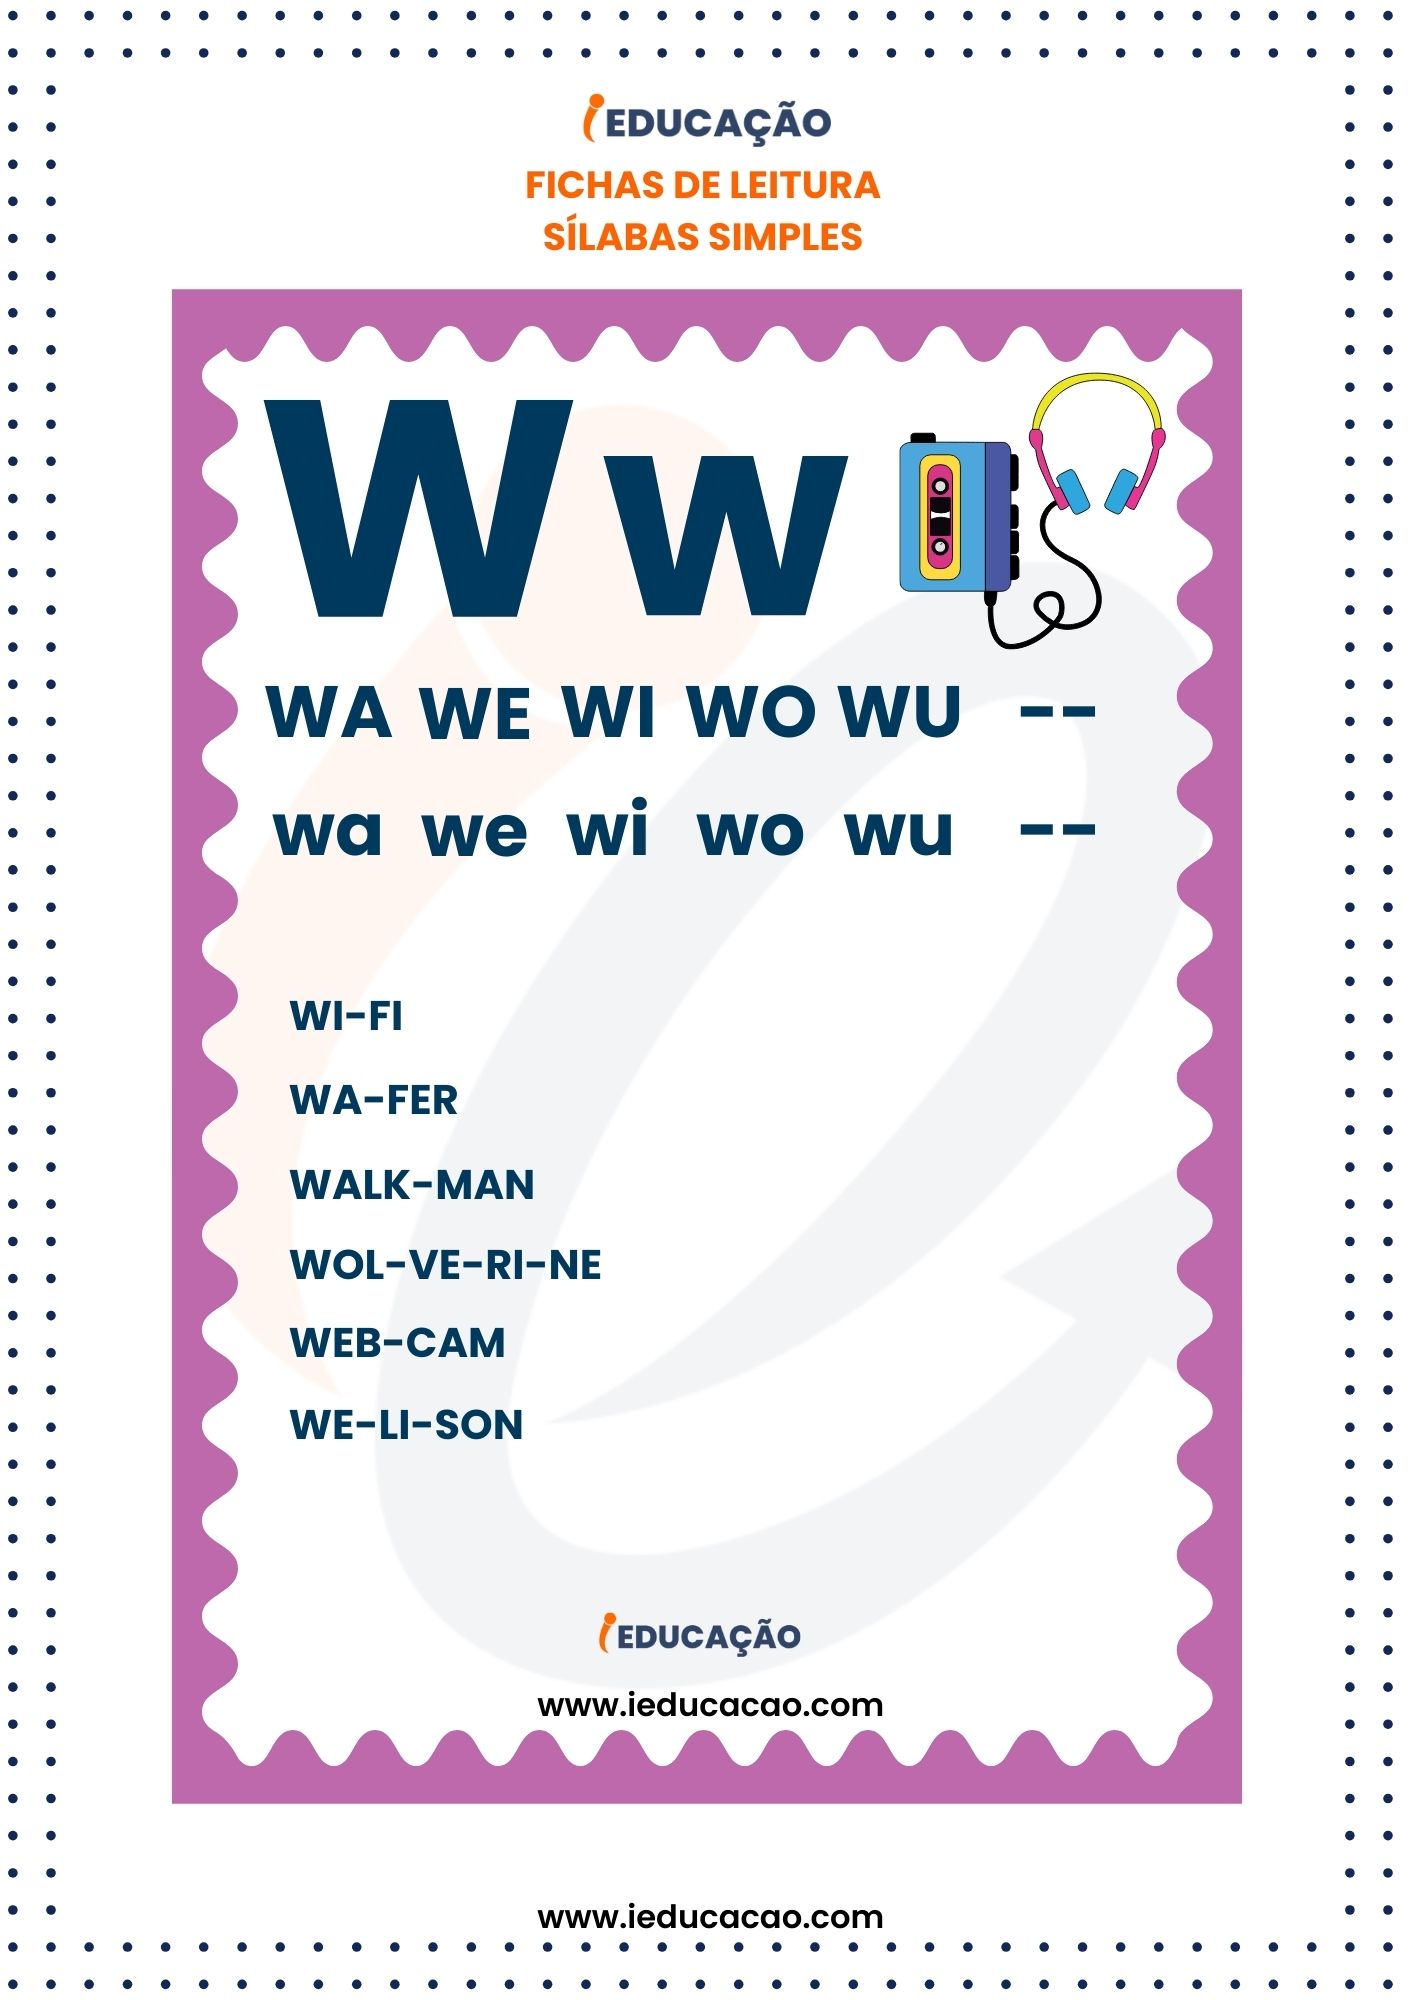 Fichas de Leitura Silabas Simples -silaba wa we wi wo